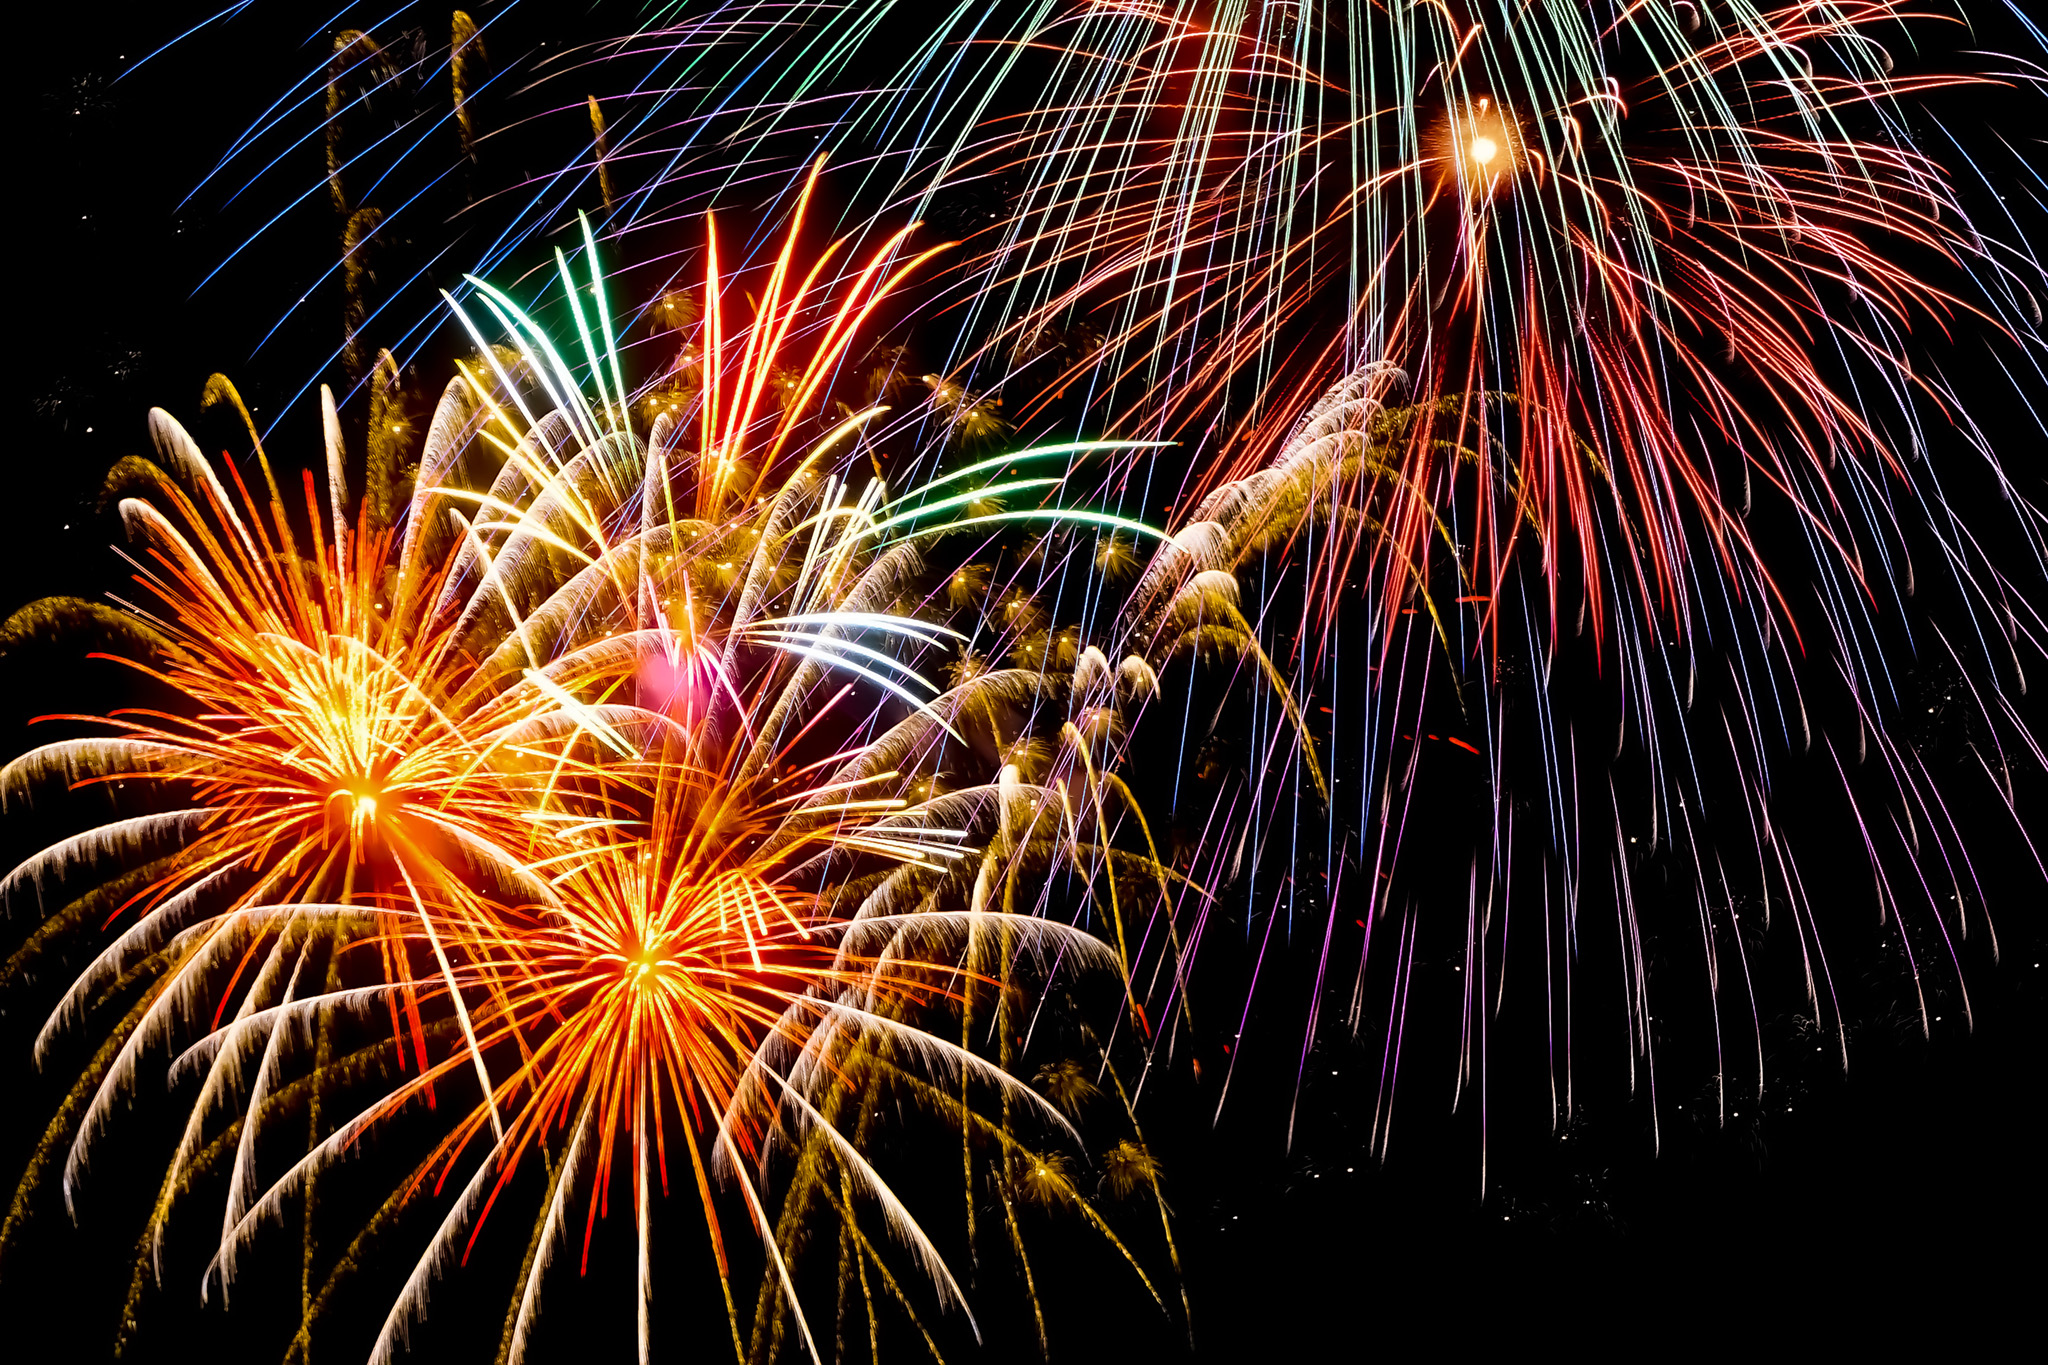 夏祭りの夜を彩る花火 の画像素材を無料ダウンロード 1 フリー素材